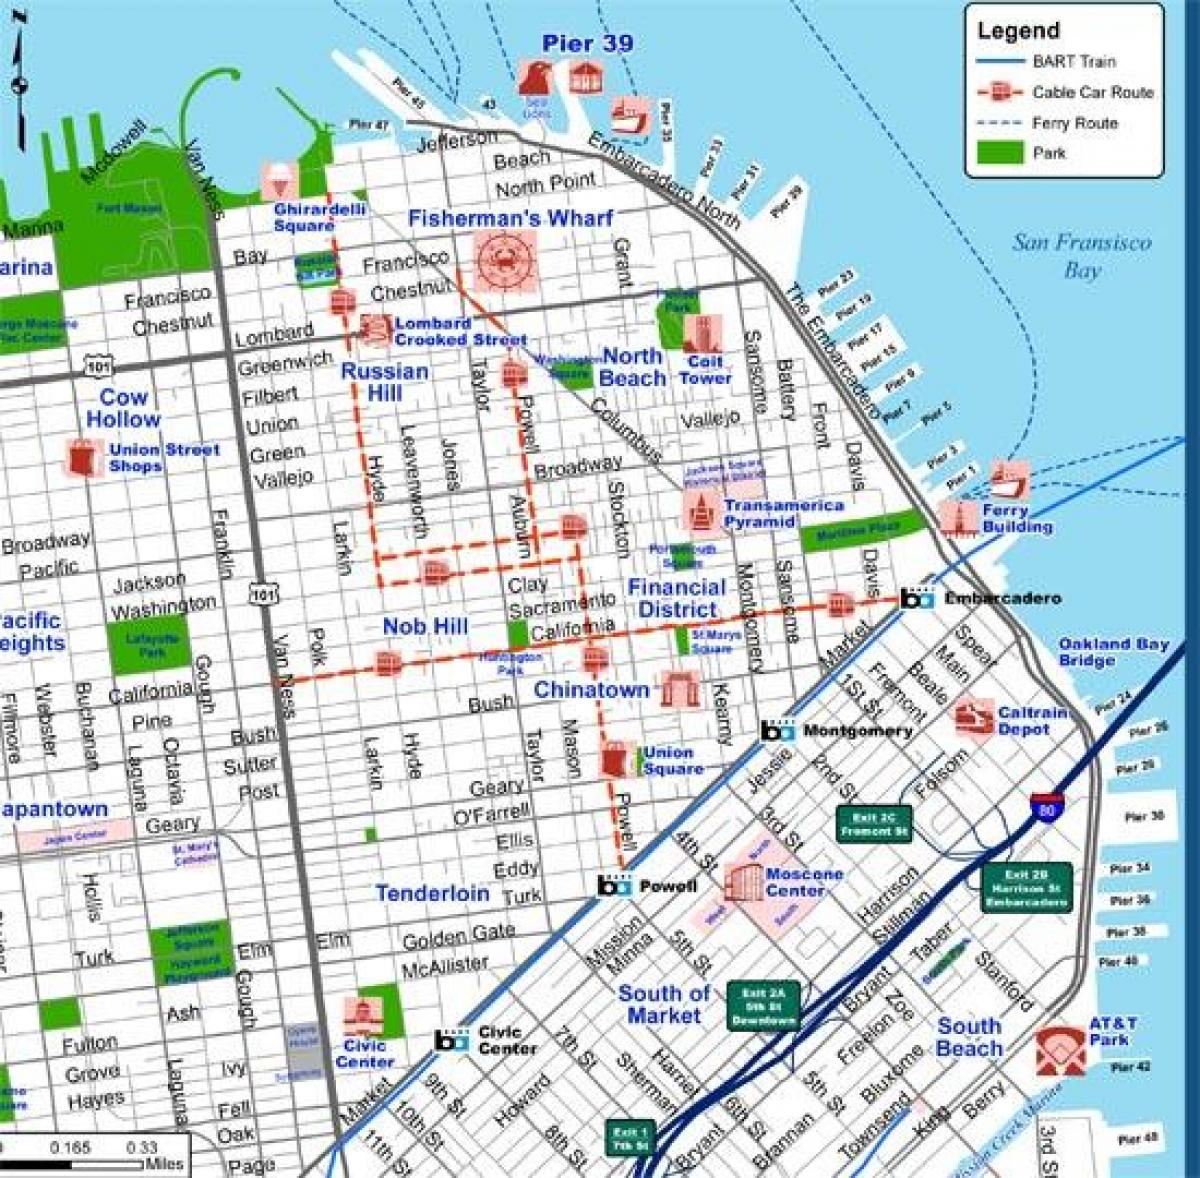 सैन फ्रांसिस्को शहर के नक्शे पर्यटक